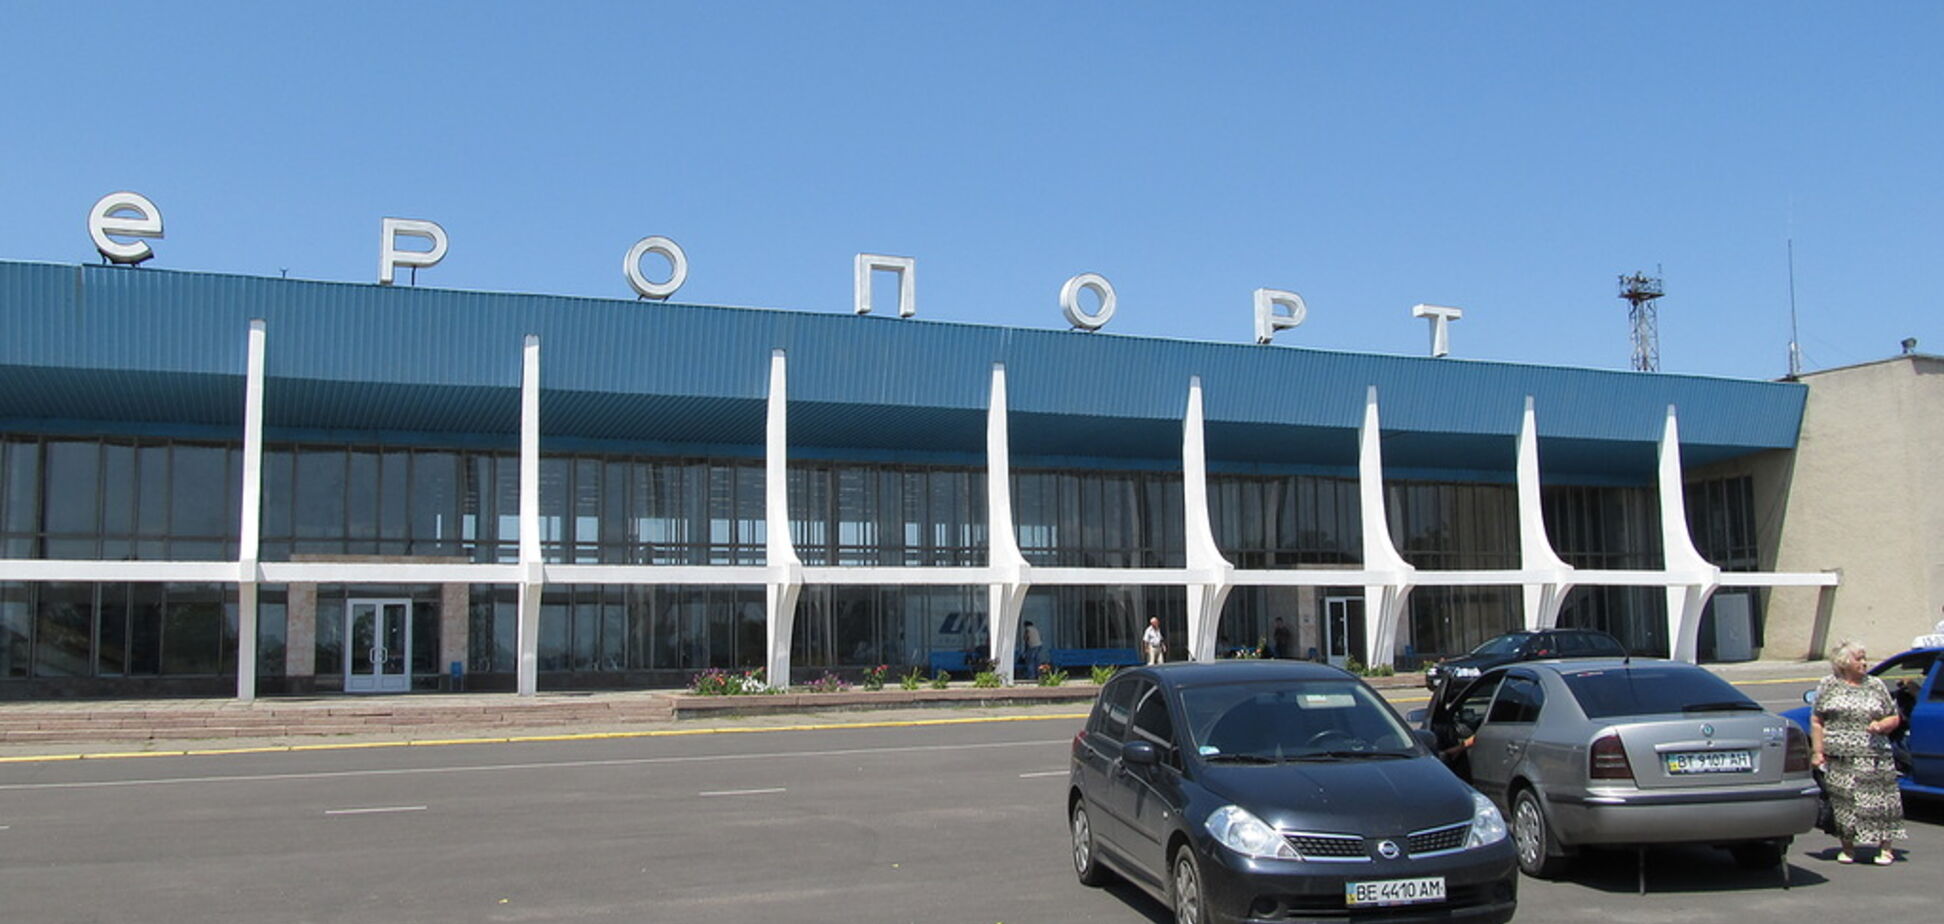 Договор на 100 млн: тендер на ремонт аэропорта Николаева выиграла фиктивная фирма